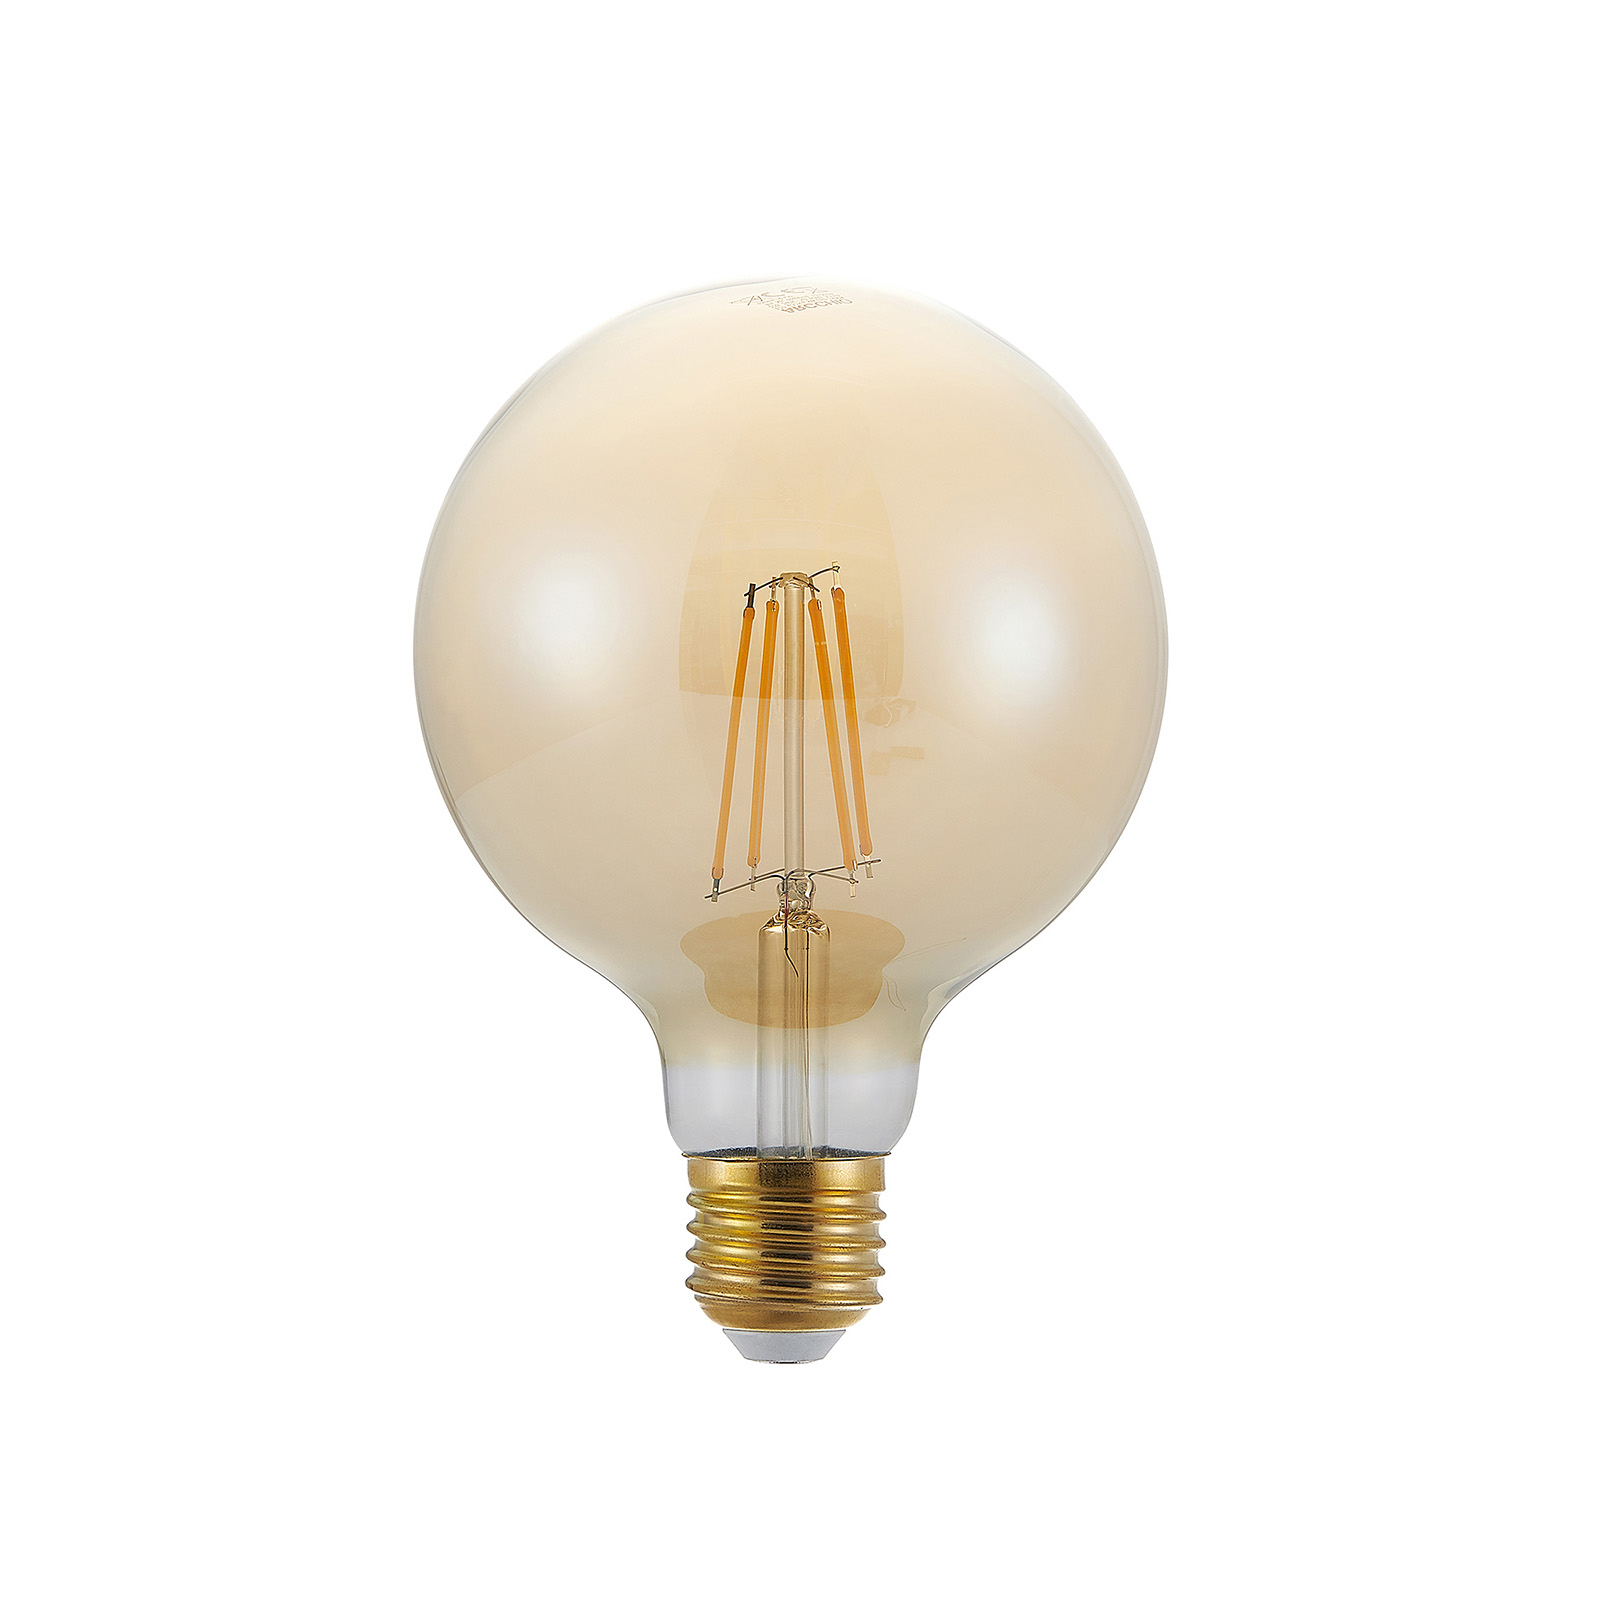 Spruit Gluren Overweldigend LED lamp E27 G125 6,5W 2.500K amber 3-step-dimmer | Lampen24.nl